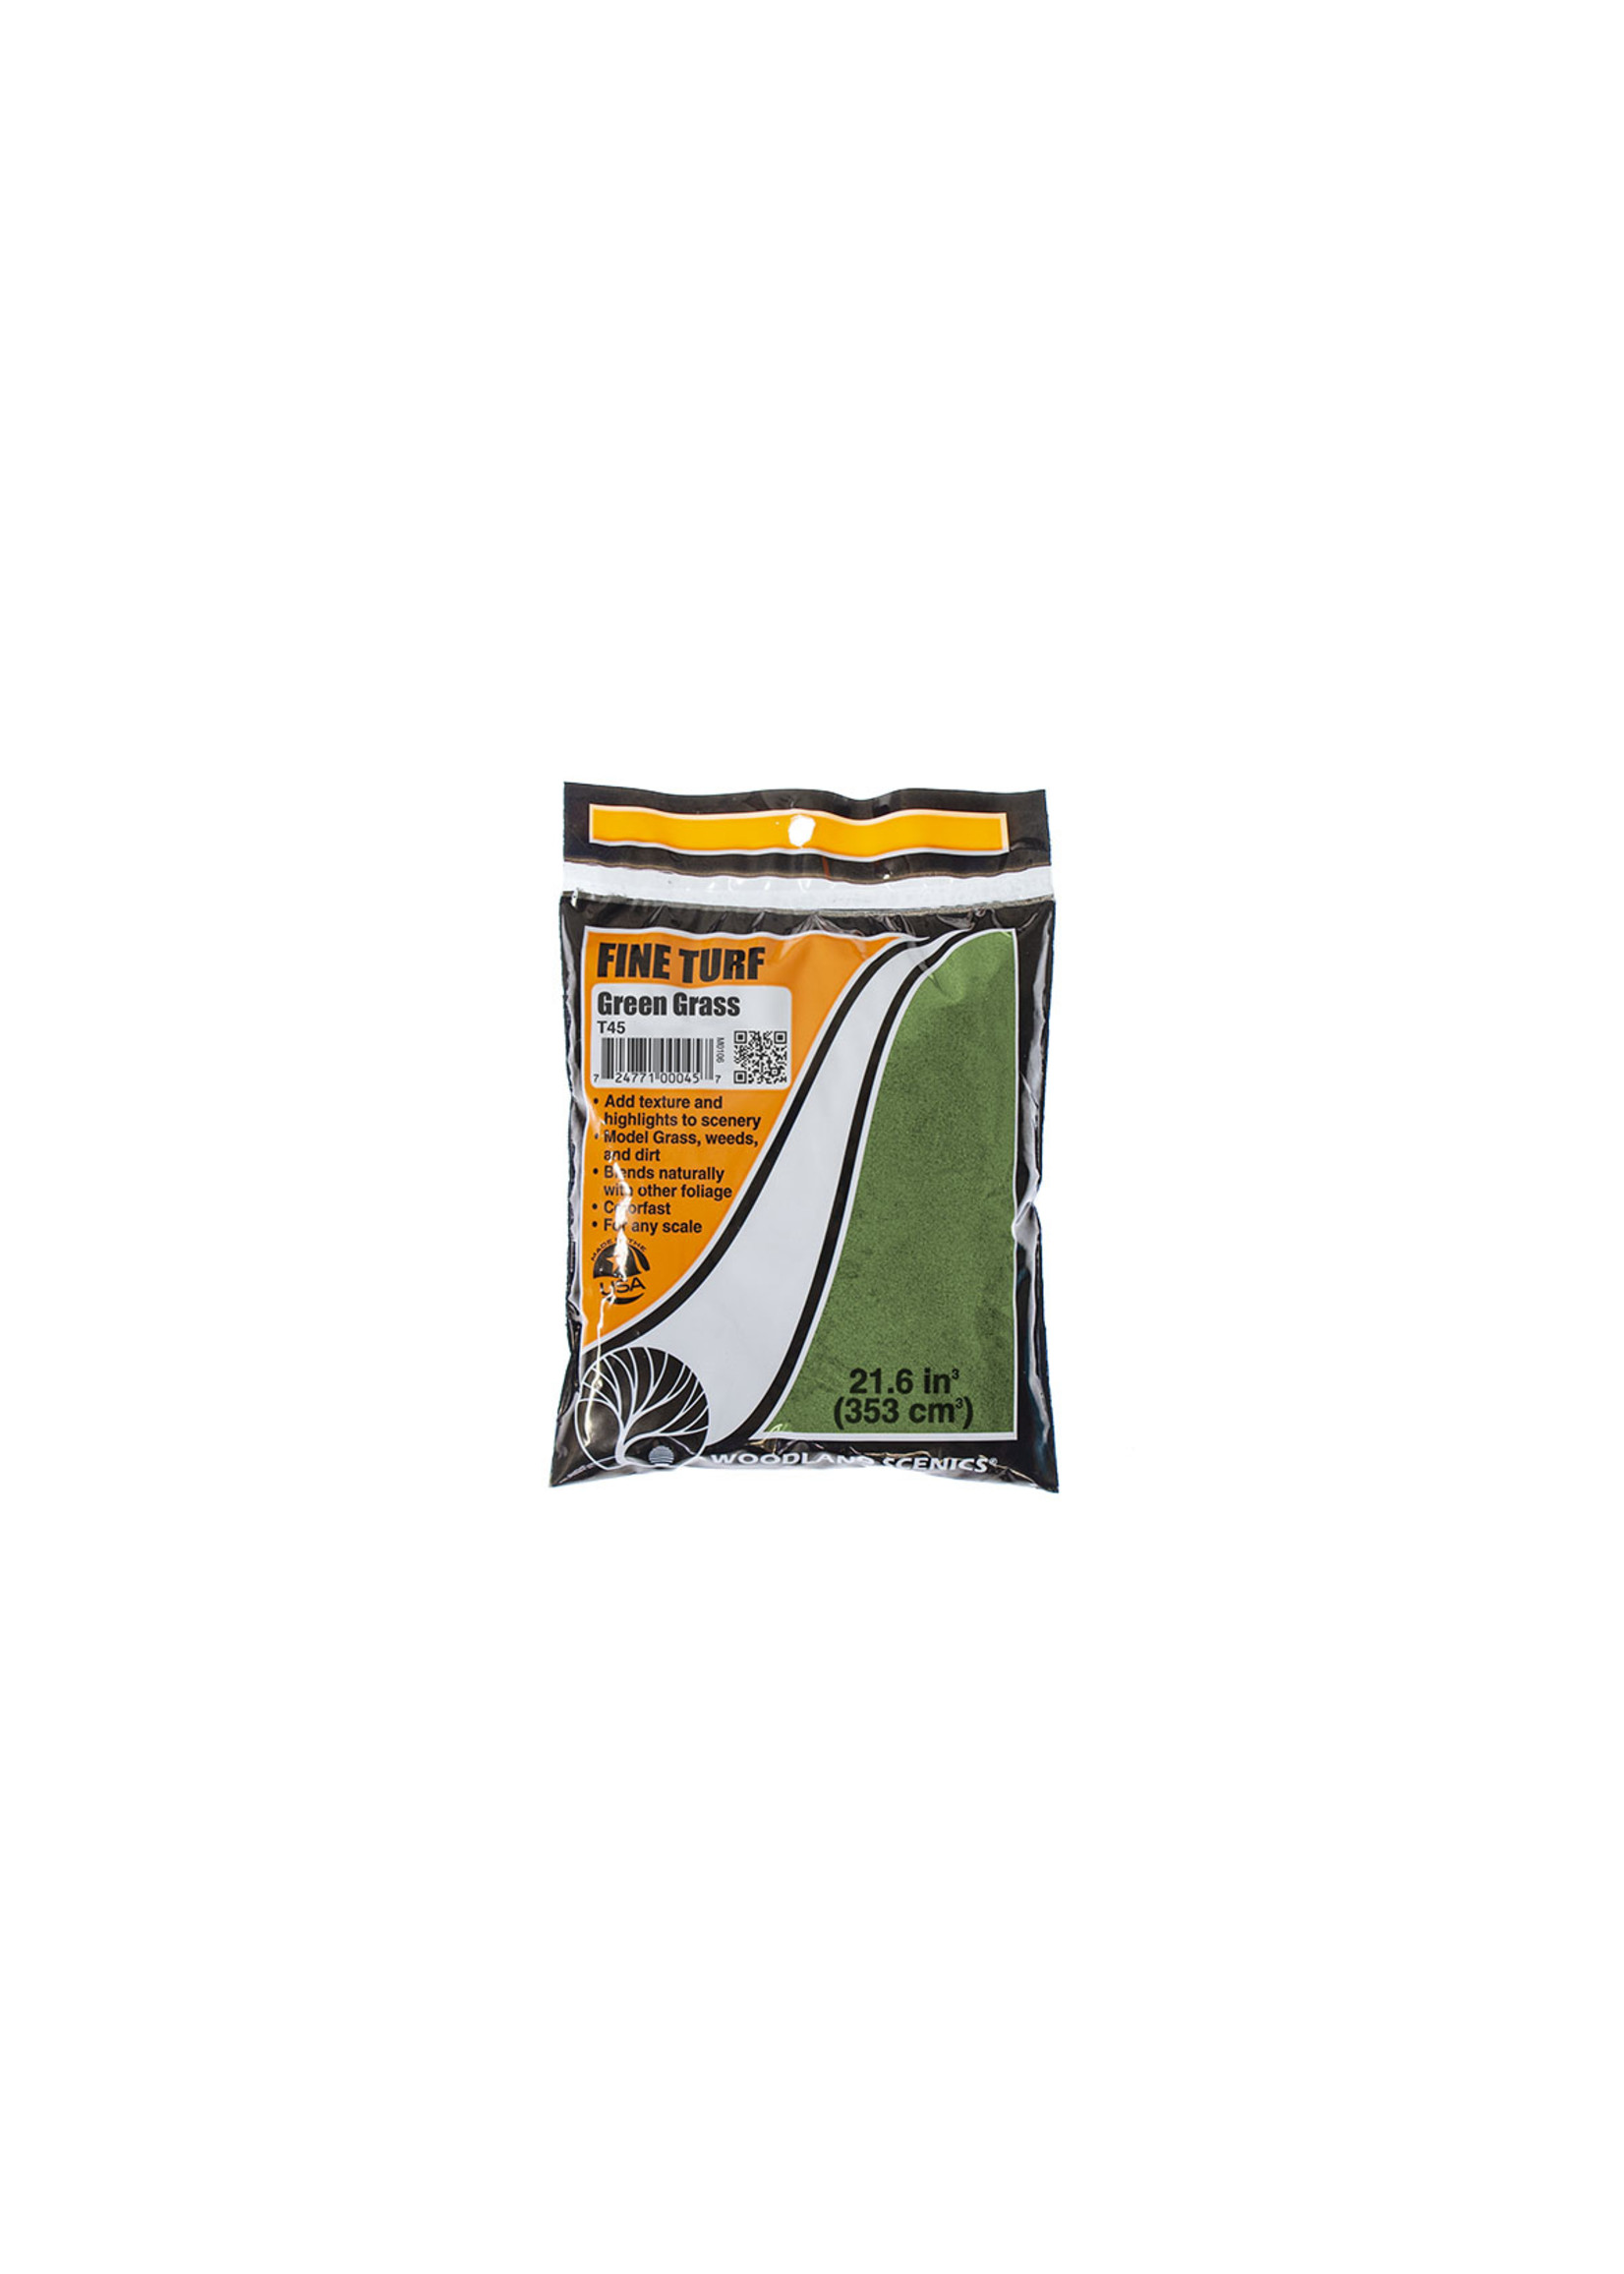 Woodland Scenics T45 - Fine Turf Bag, 21.6 cu. in. - Green Grass